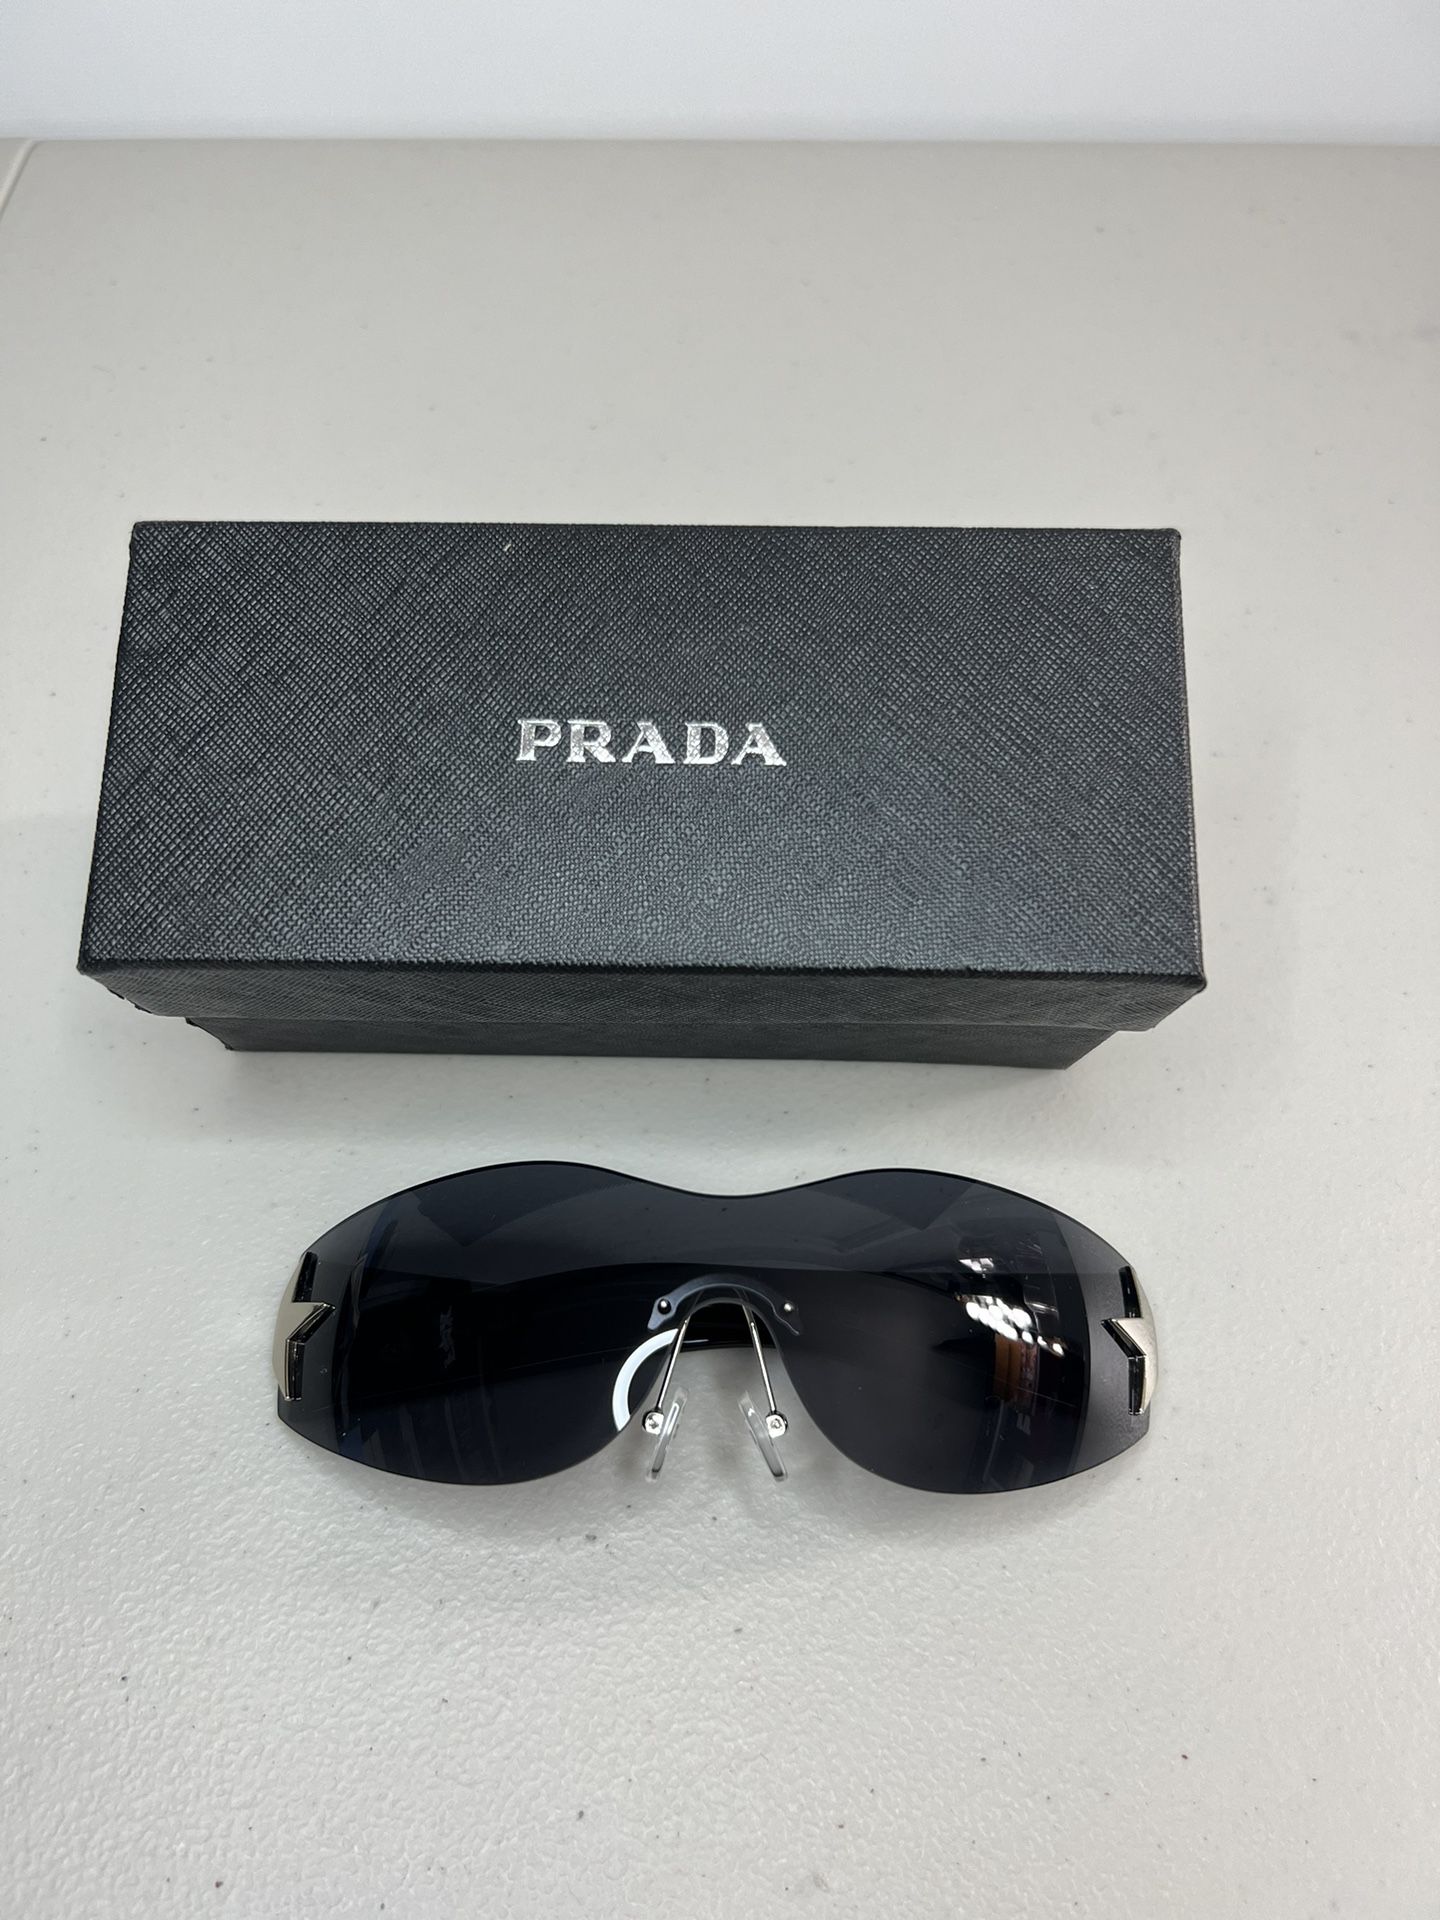 Prada Sunglasses SEND OFFERS!! for Sale in Marina, CA - OfferUp